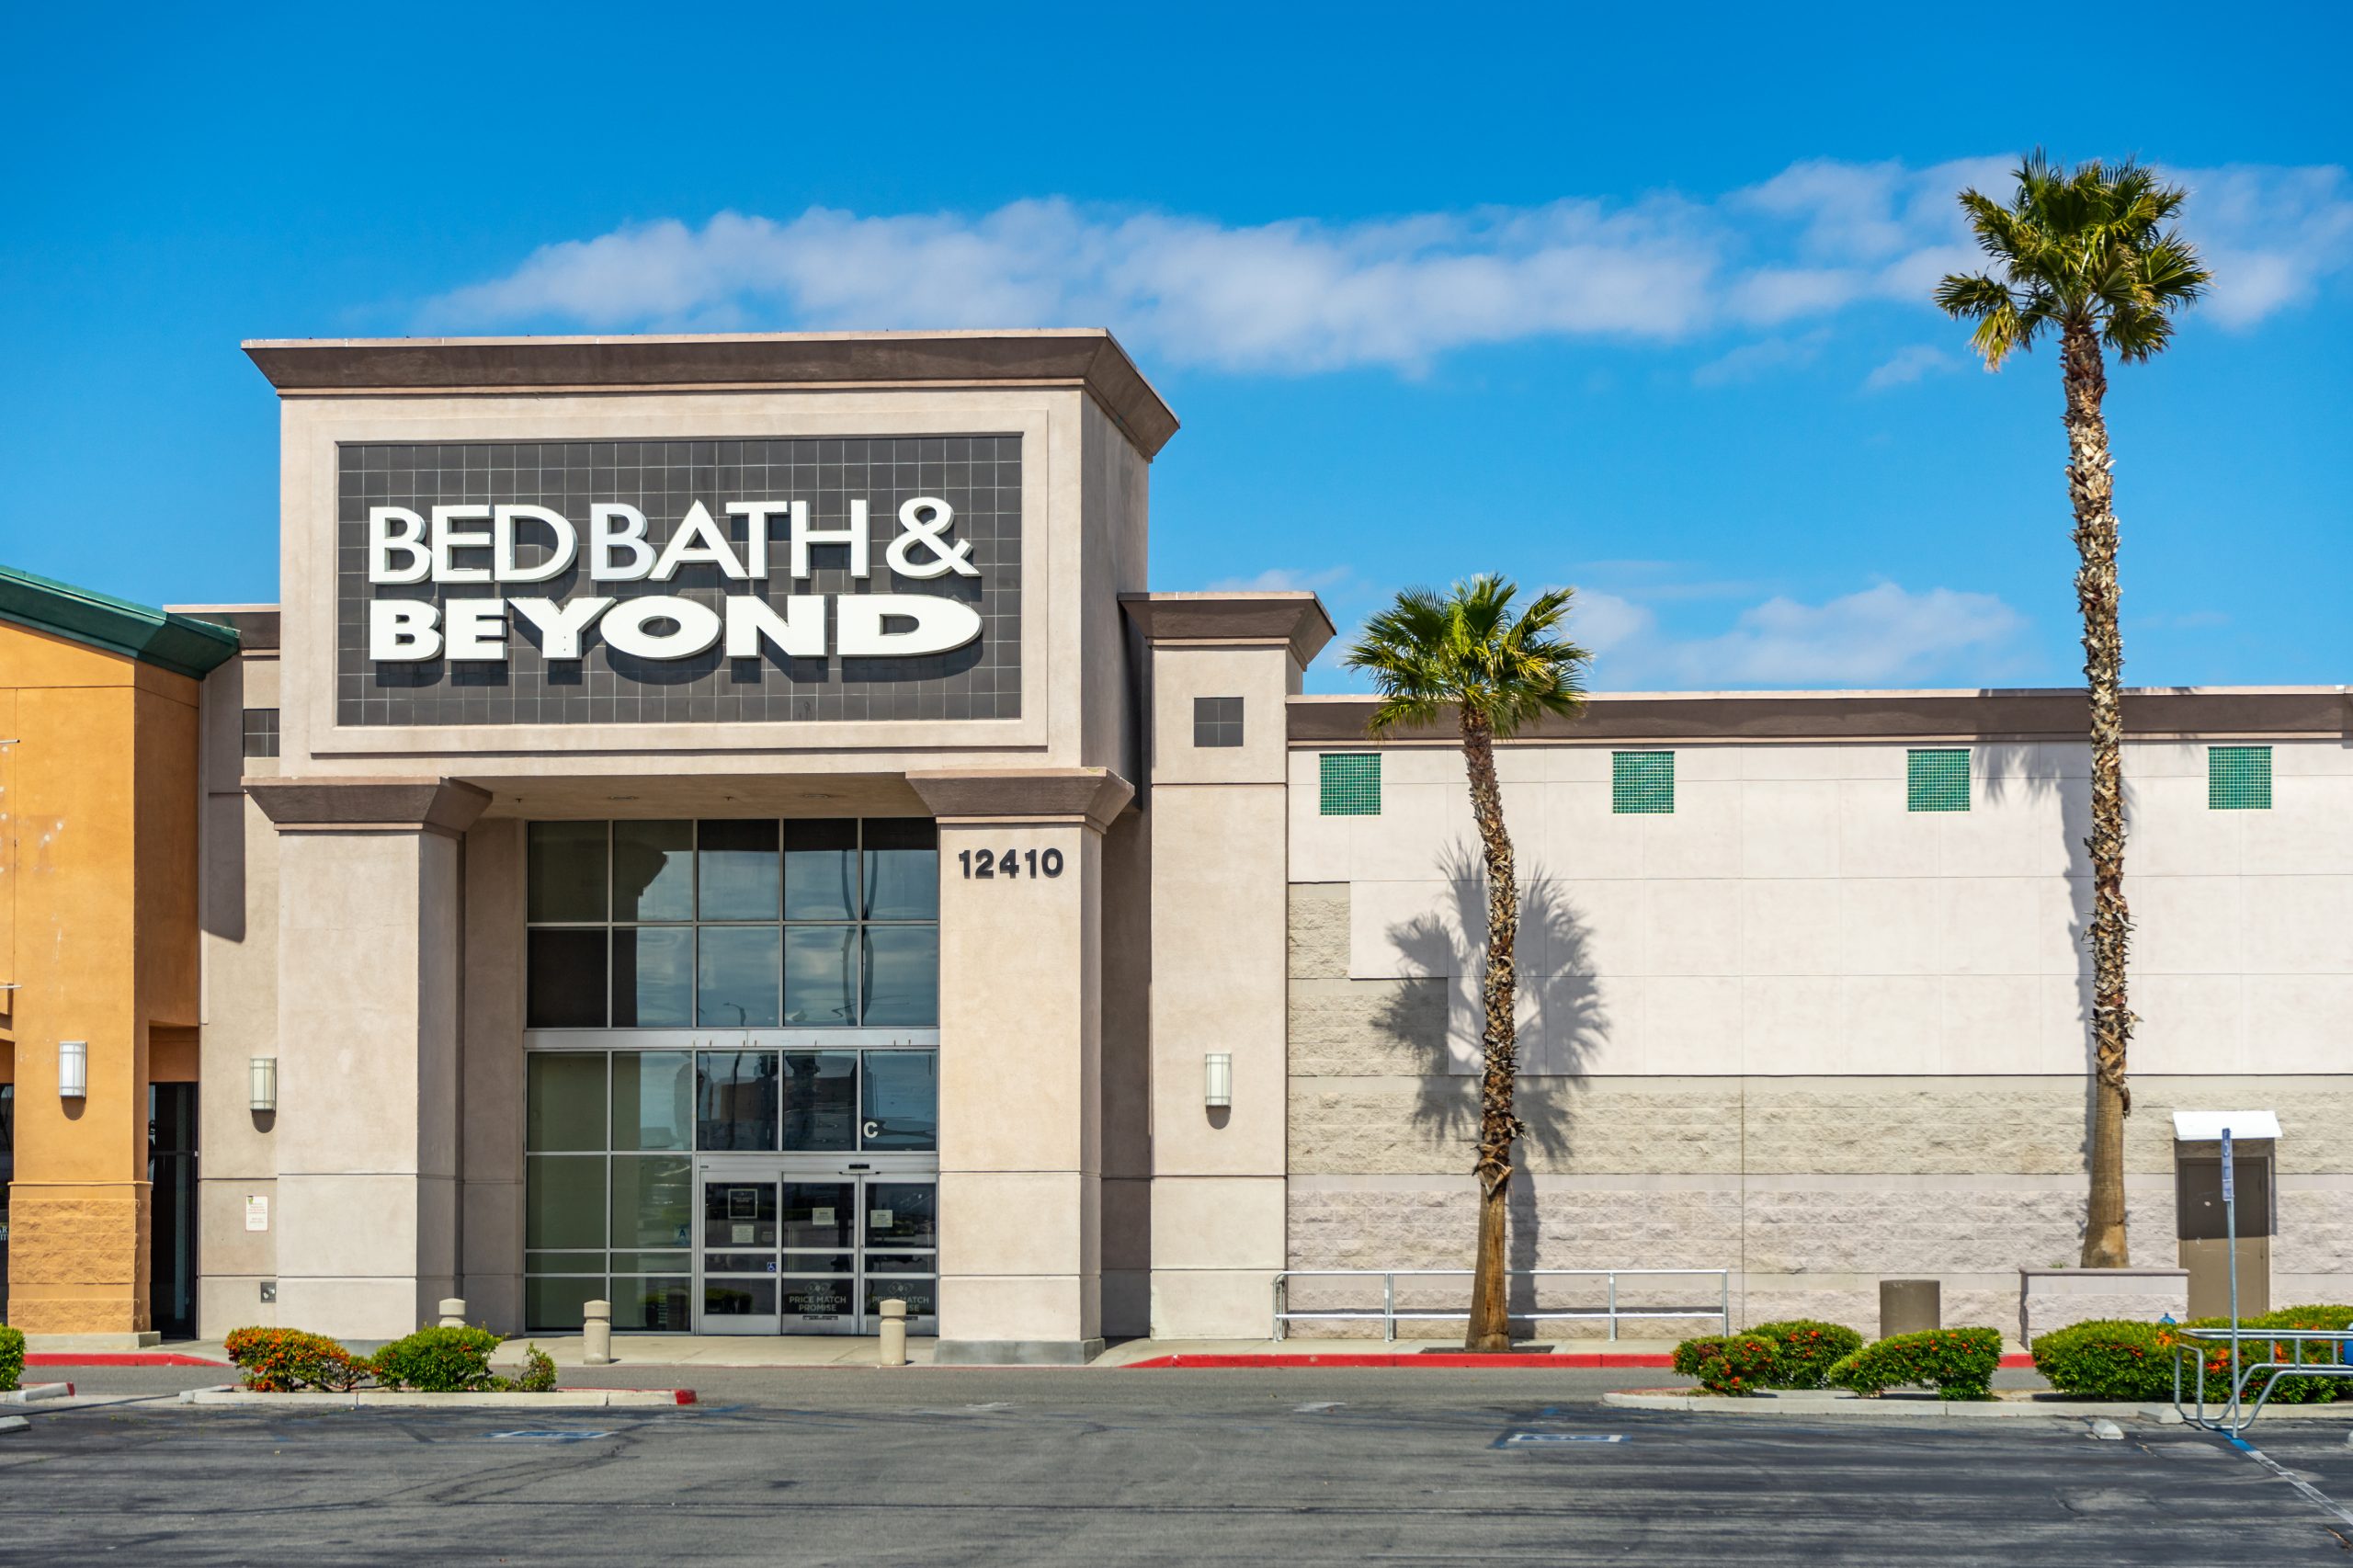 Bed Bath &#038; Beyond Confirms Sales Decrease of 33%